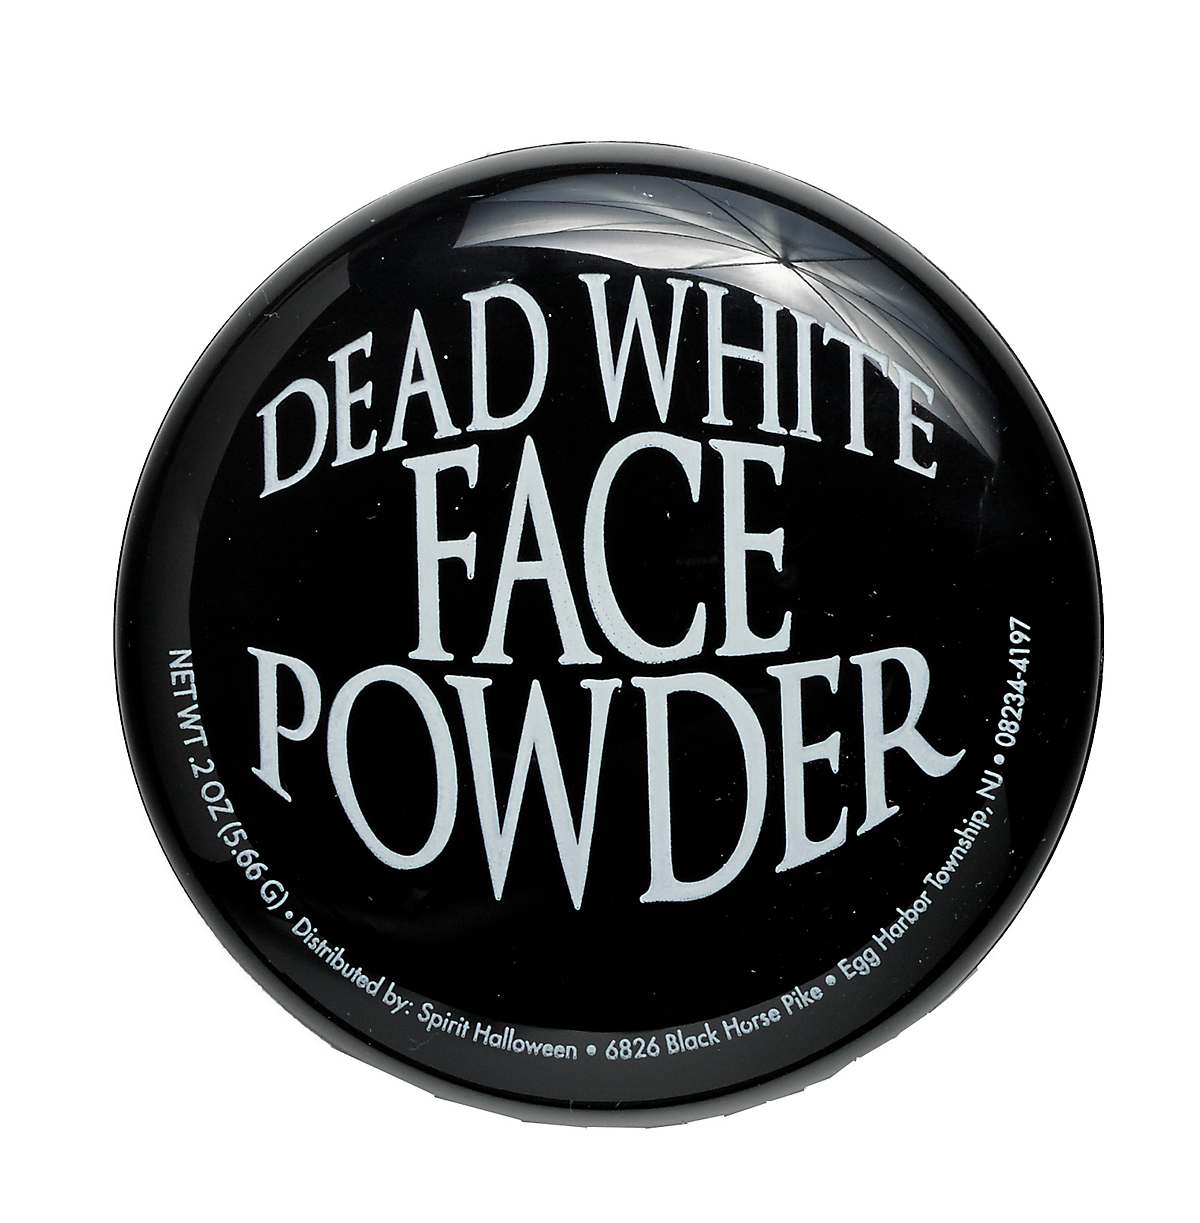 Dead white face powder makeup